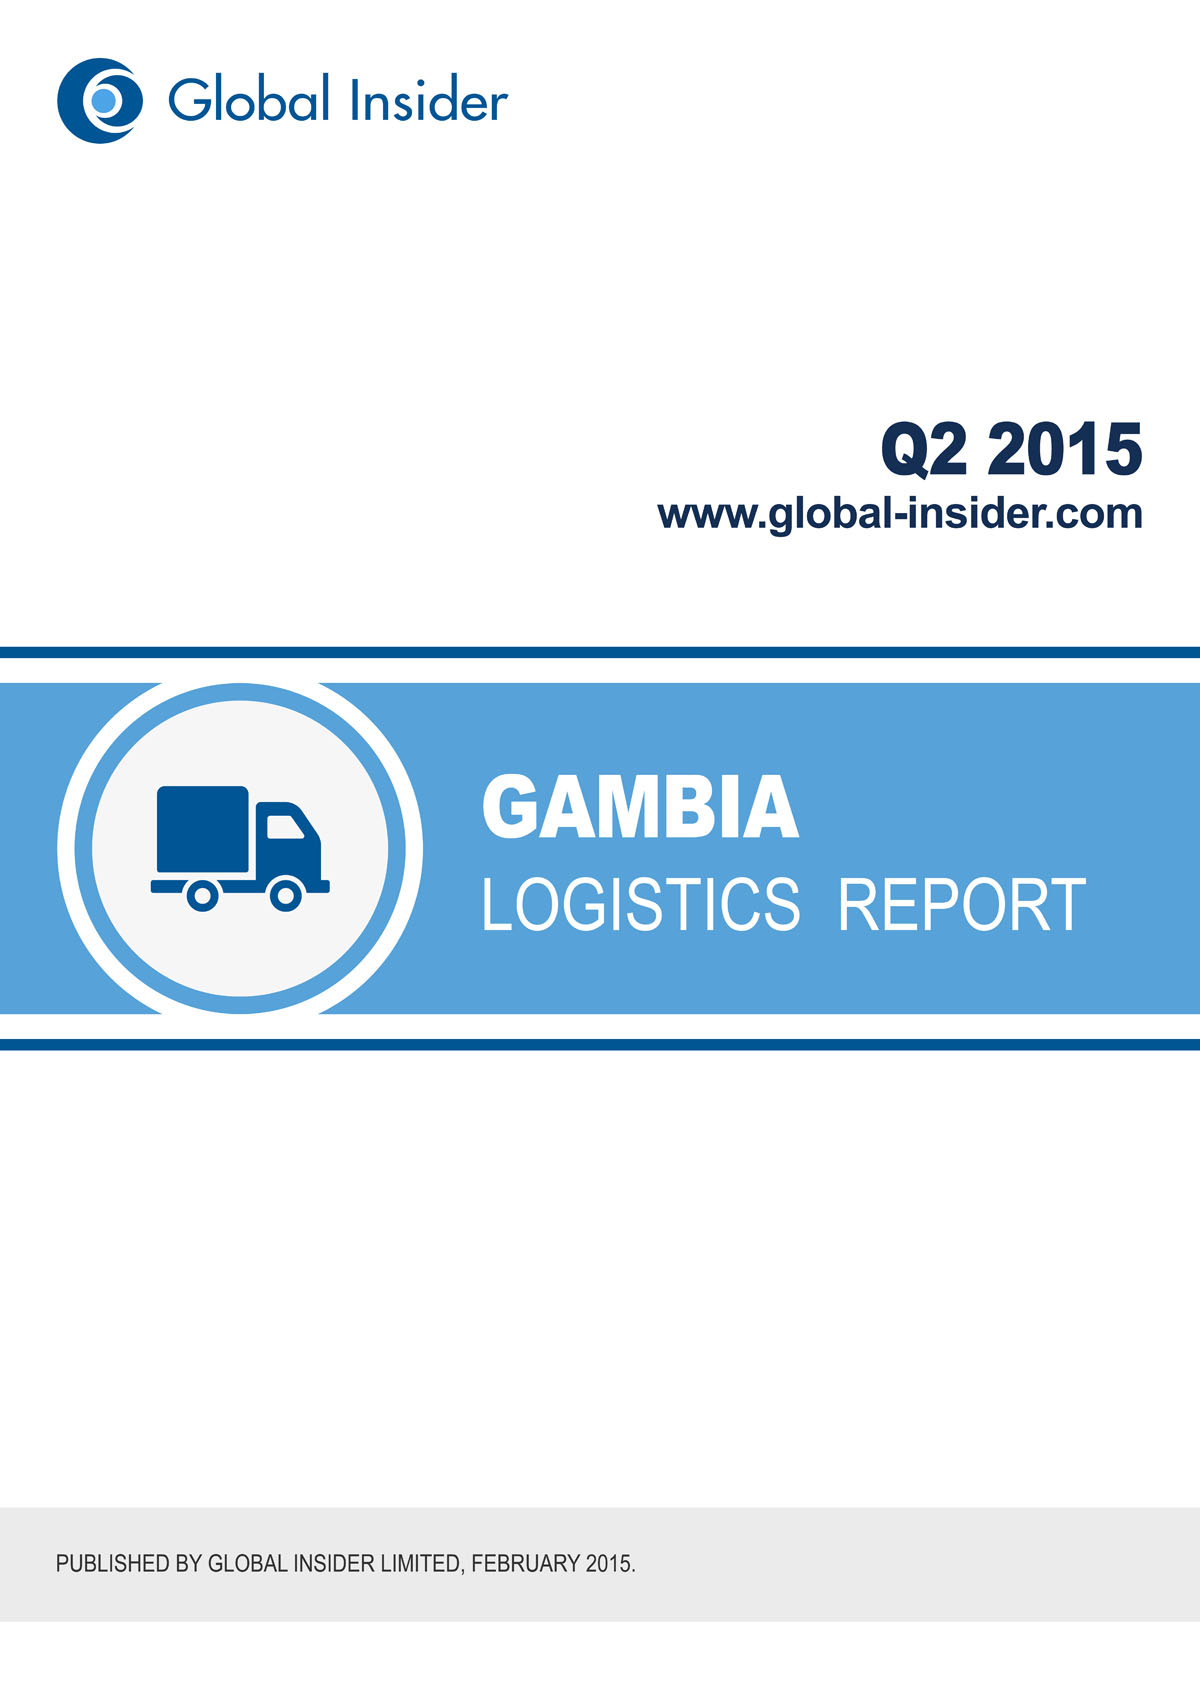 Gambia Logistics Report